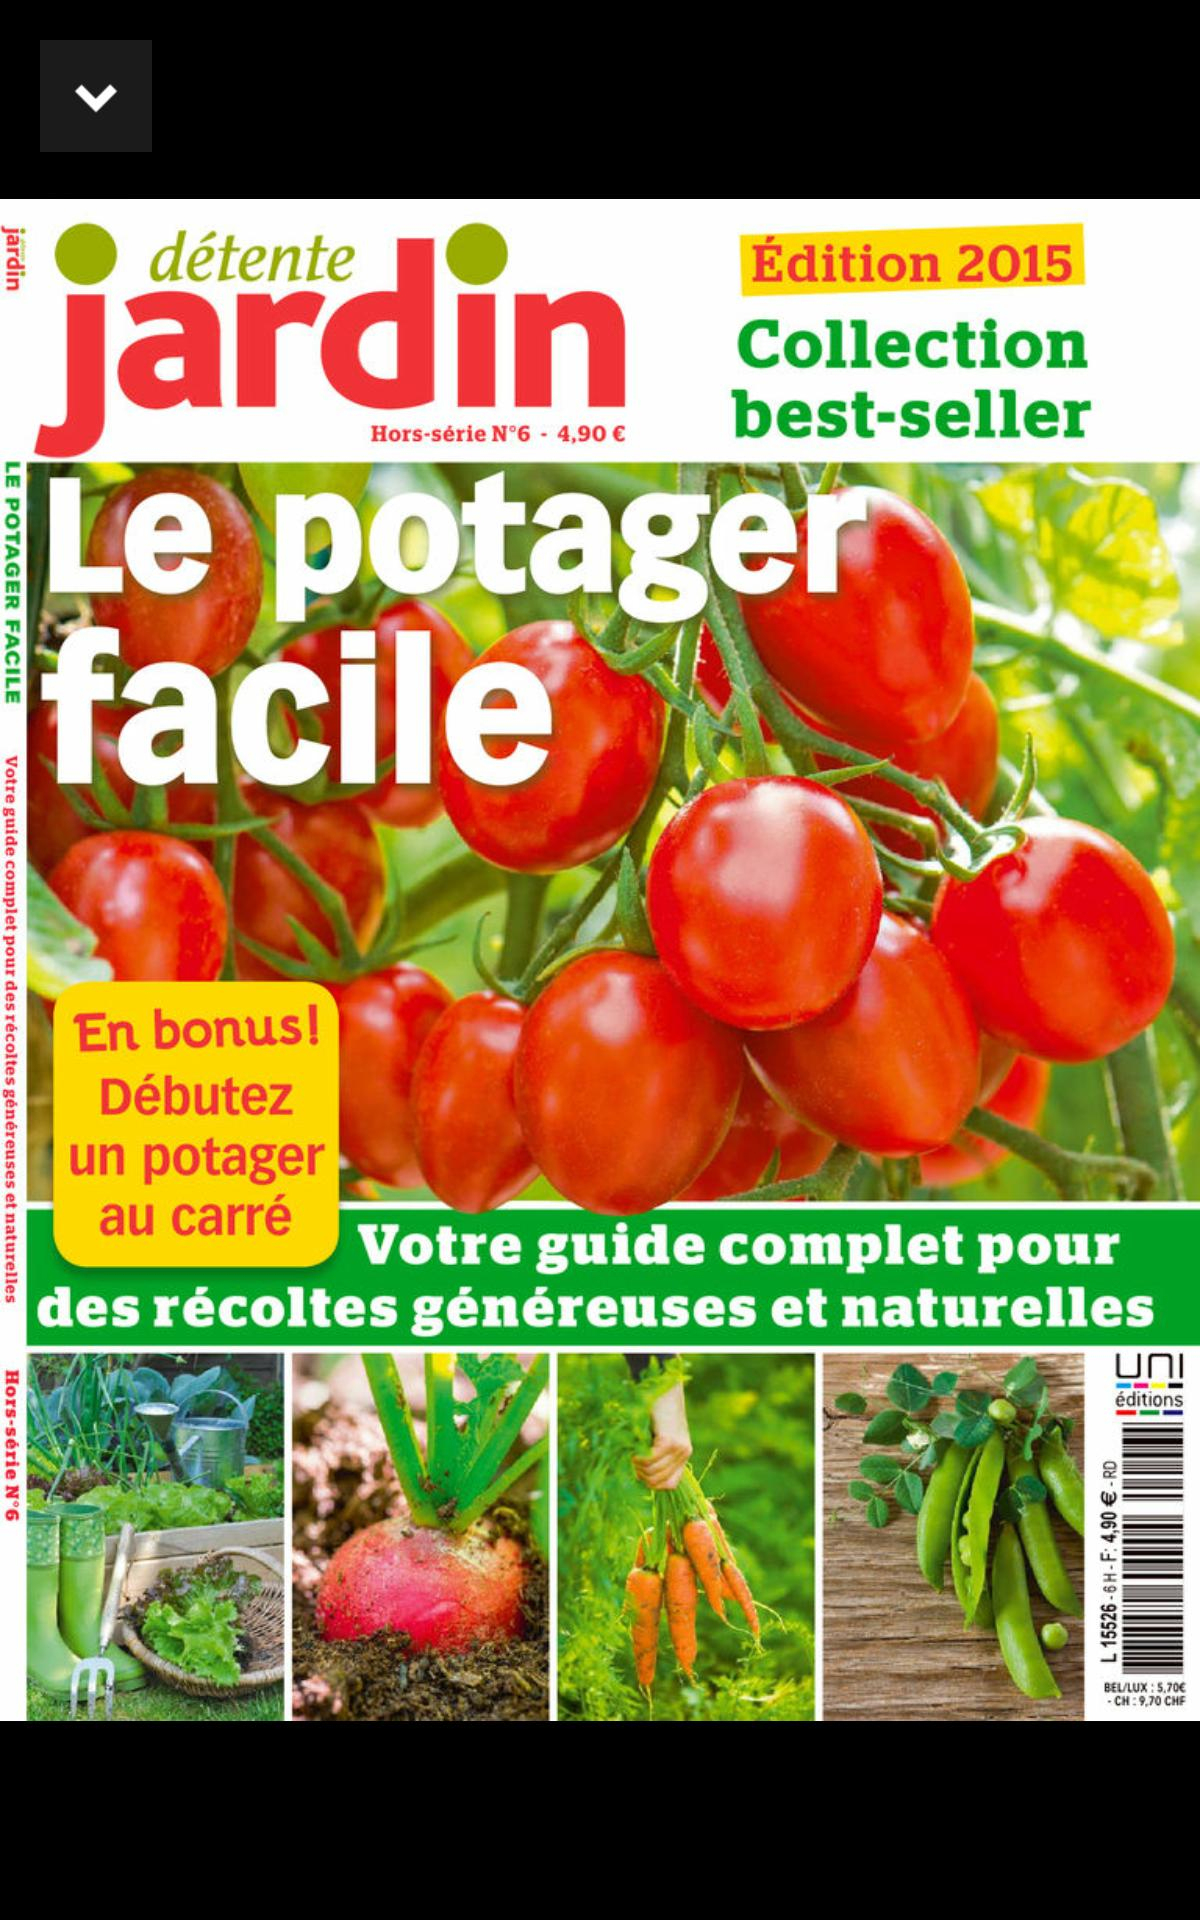 Détente Jardin - Le Magazine Für Android - Apk Herunterladen dedans Détente Jardin Magazine